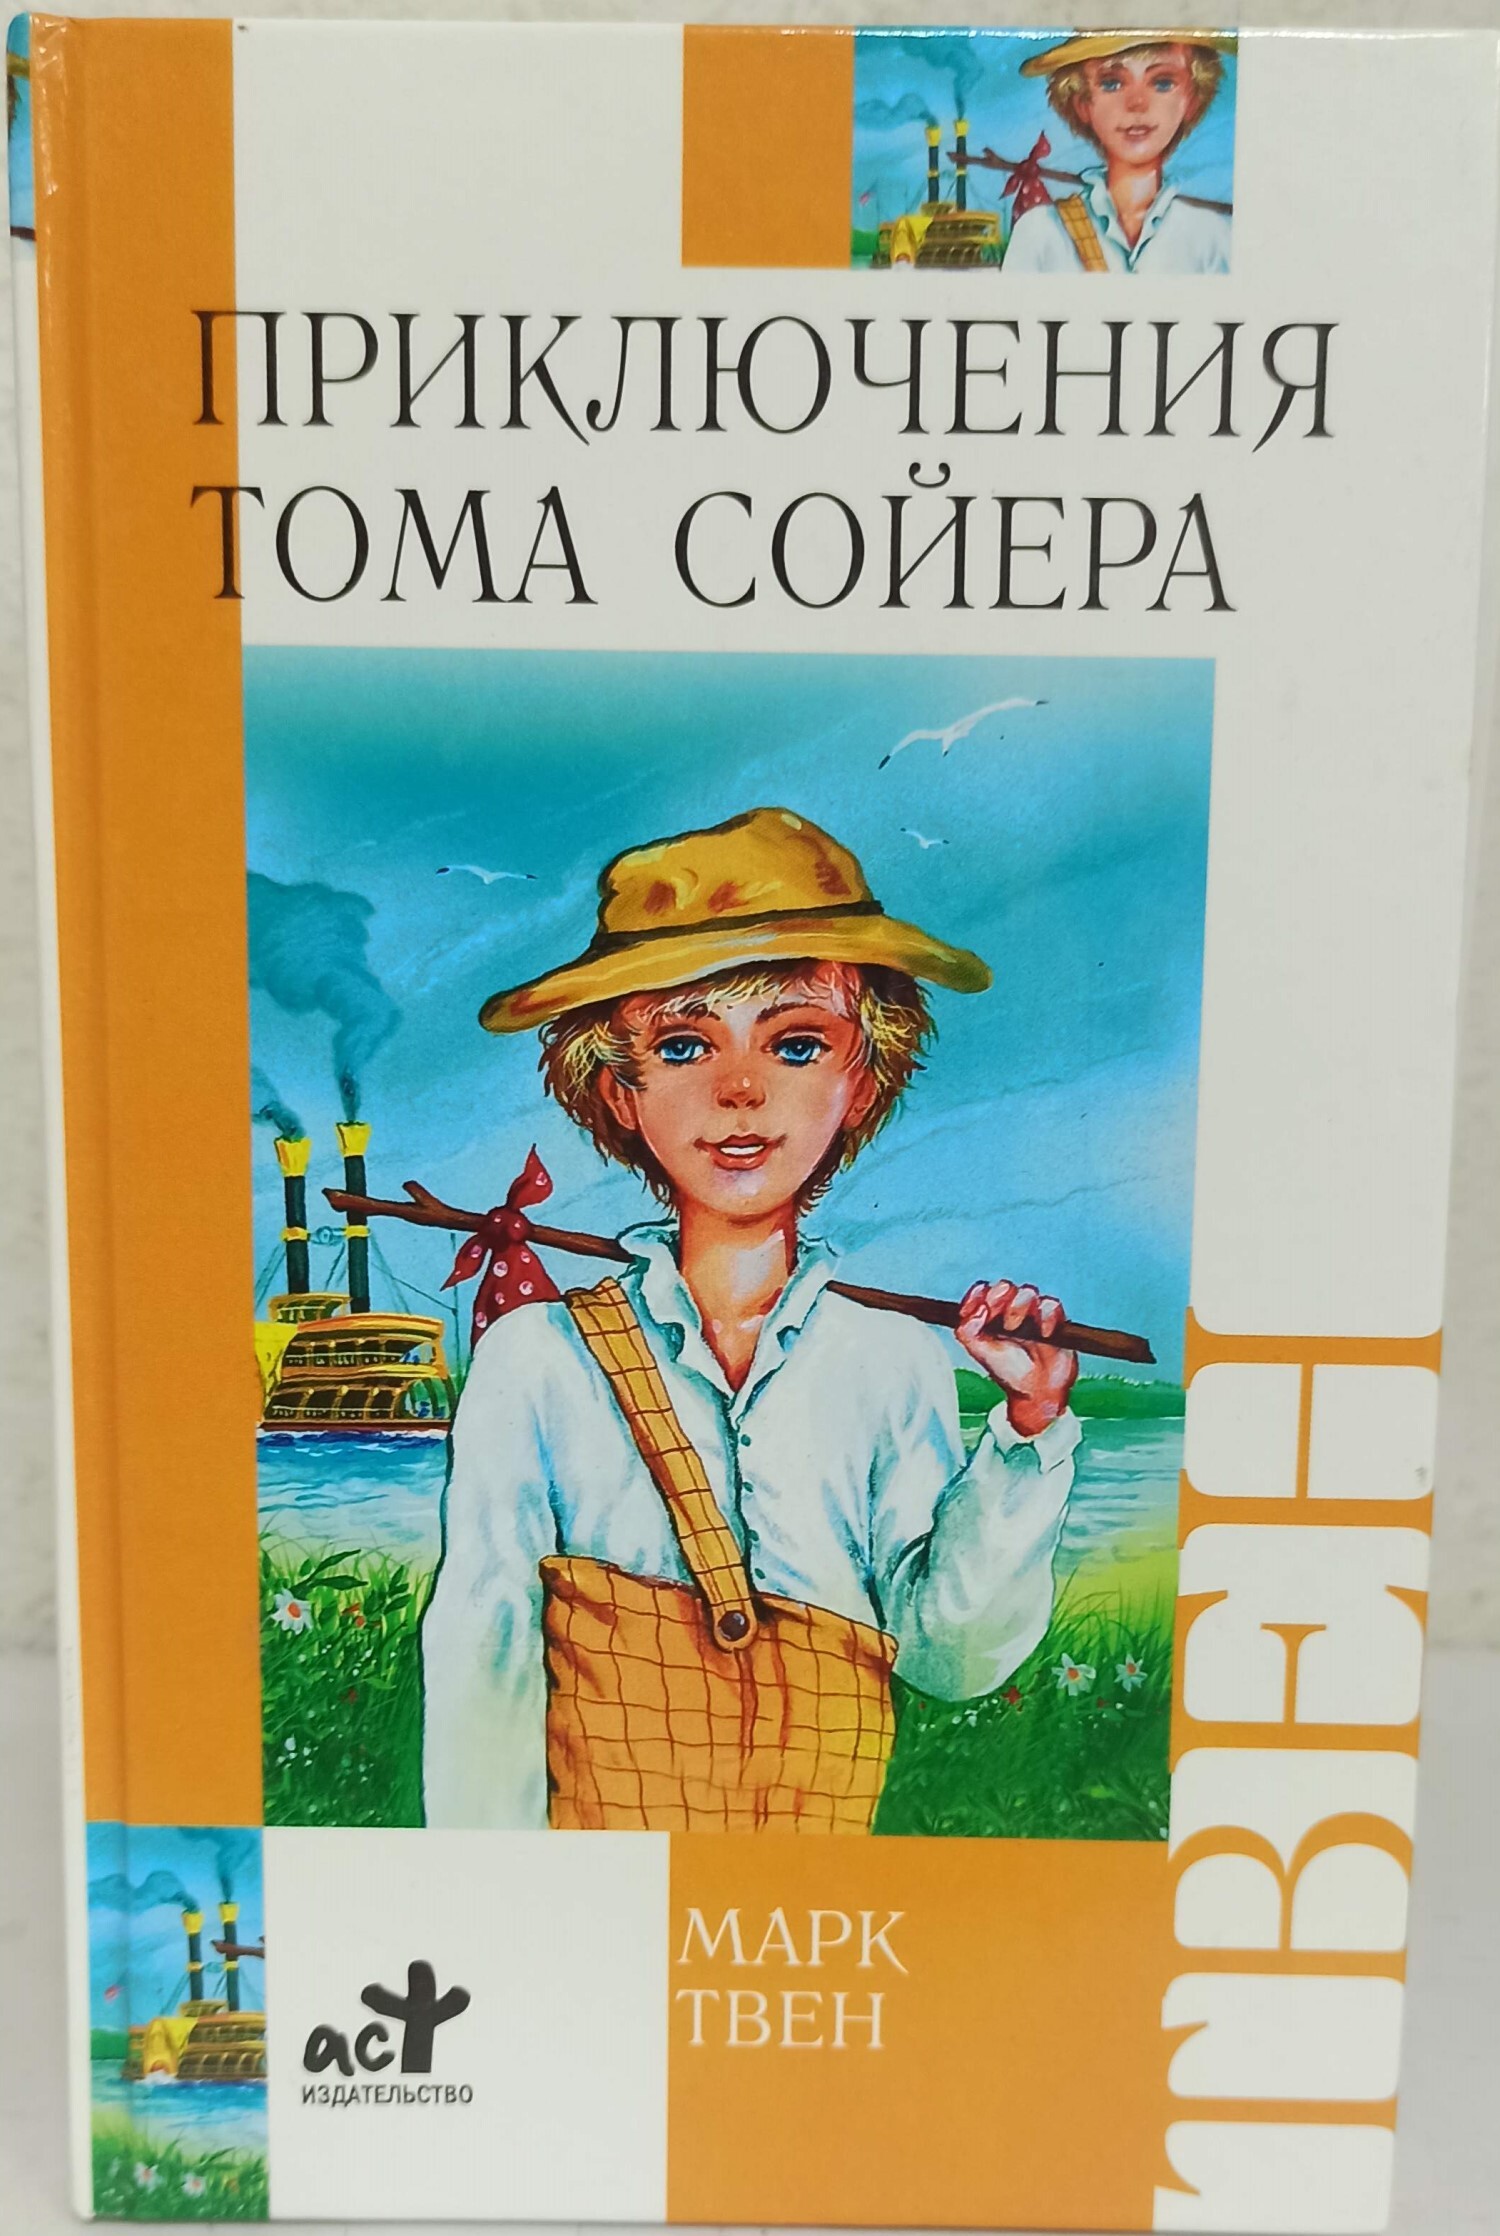 Произведения марка твена приключения тома сойера